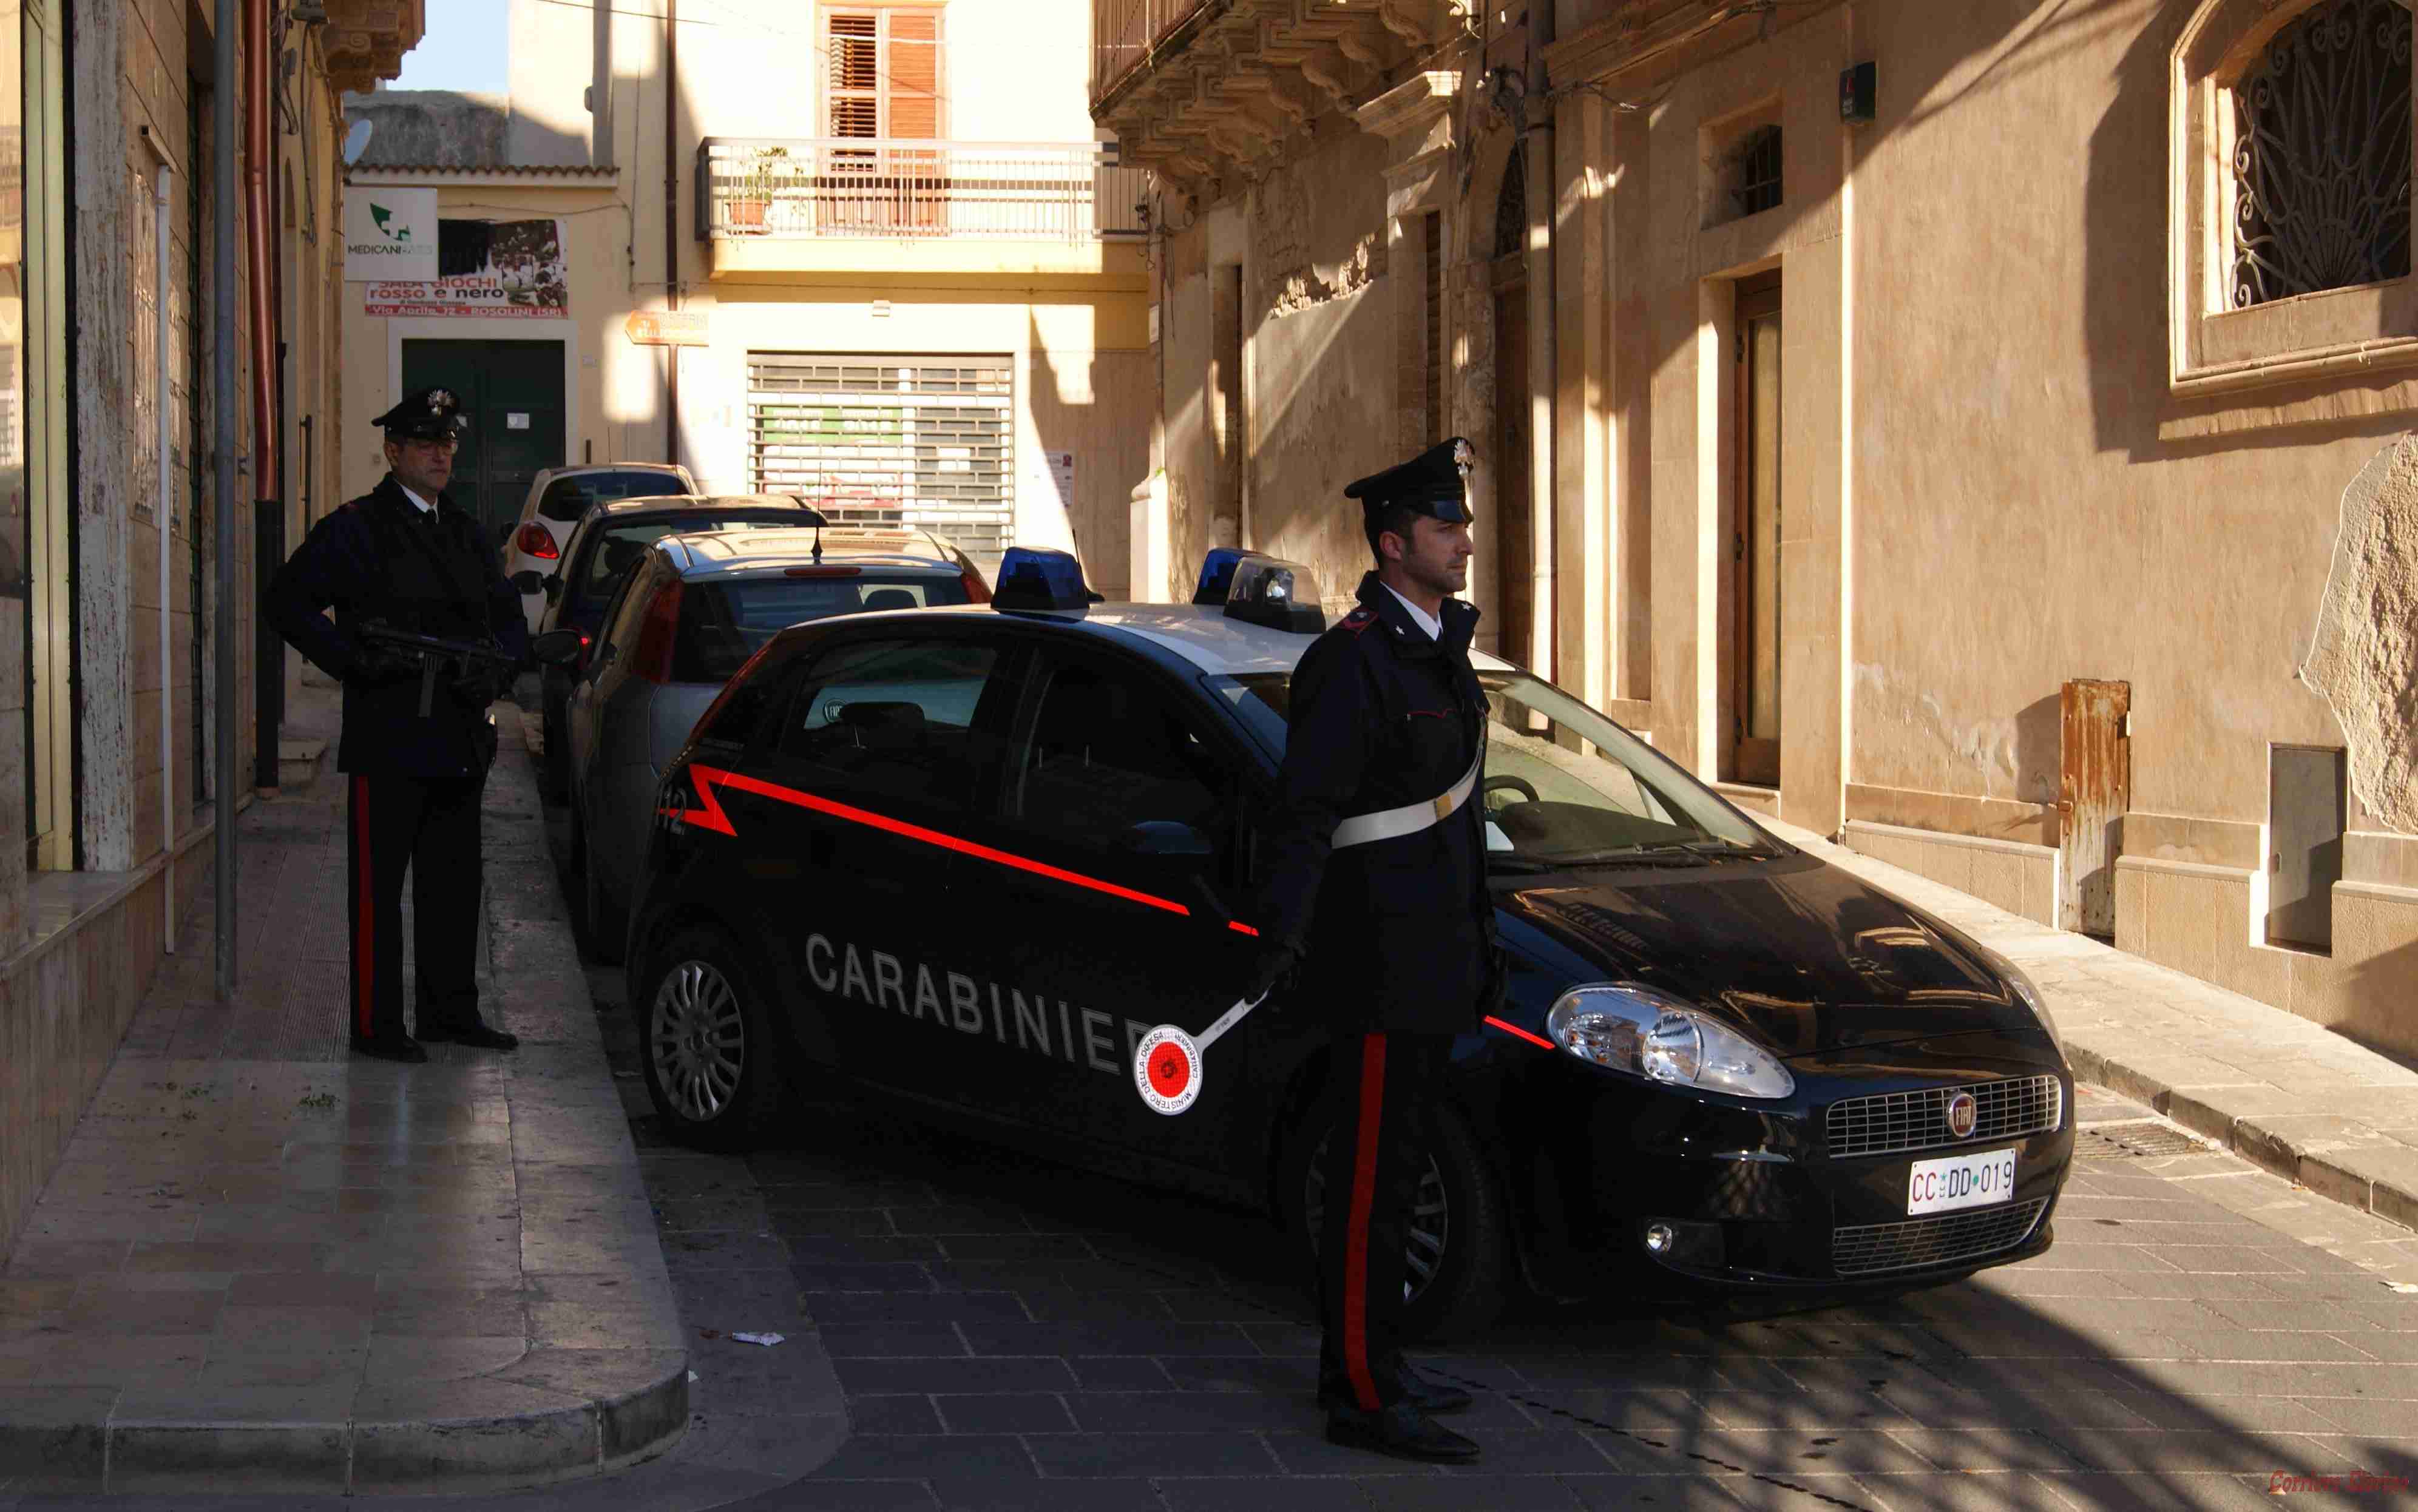 Carabinieri: contrasto alla droga più efficace a Rosolini grazie alle denunce della gente